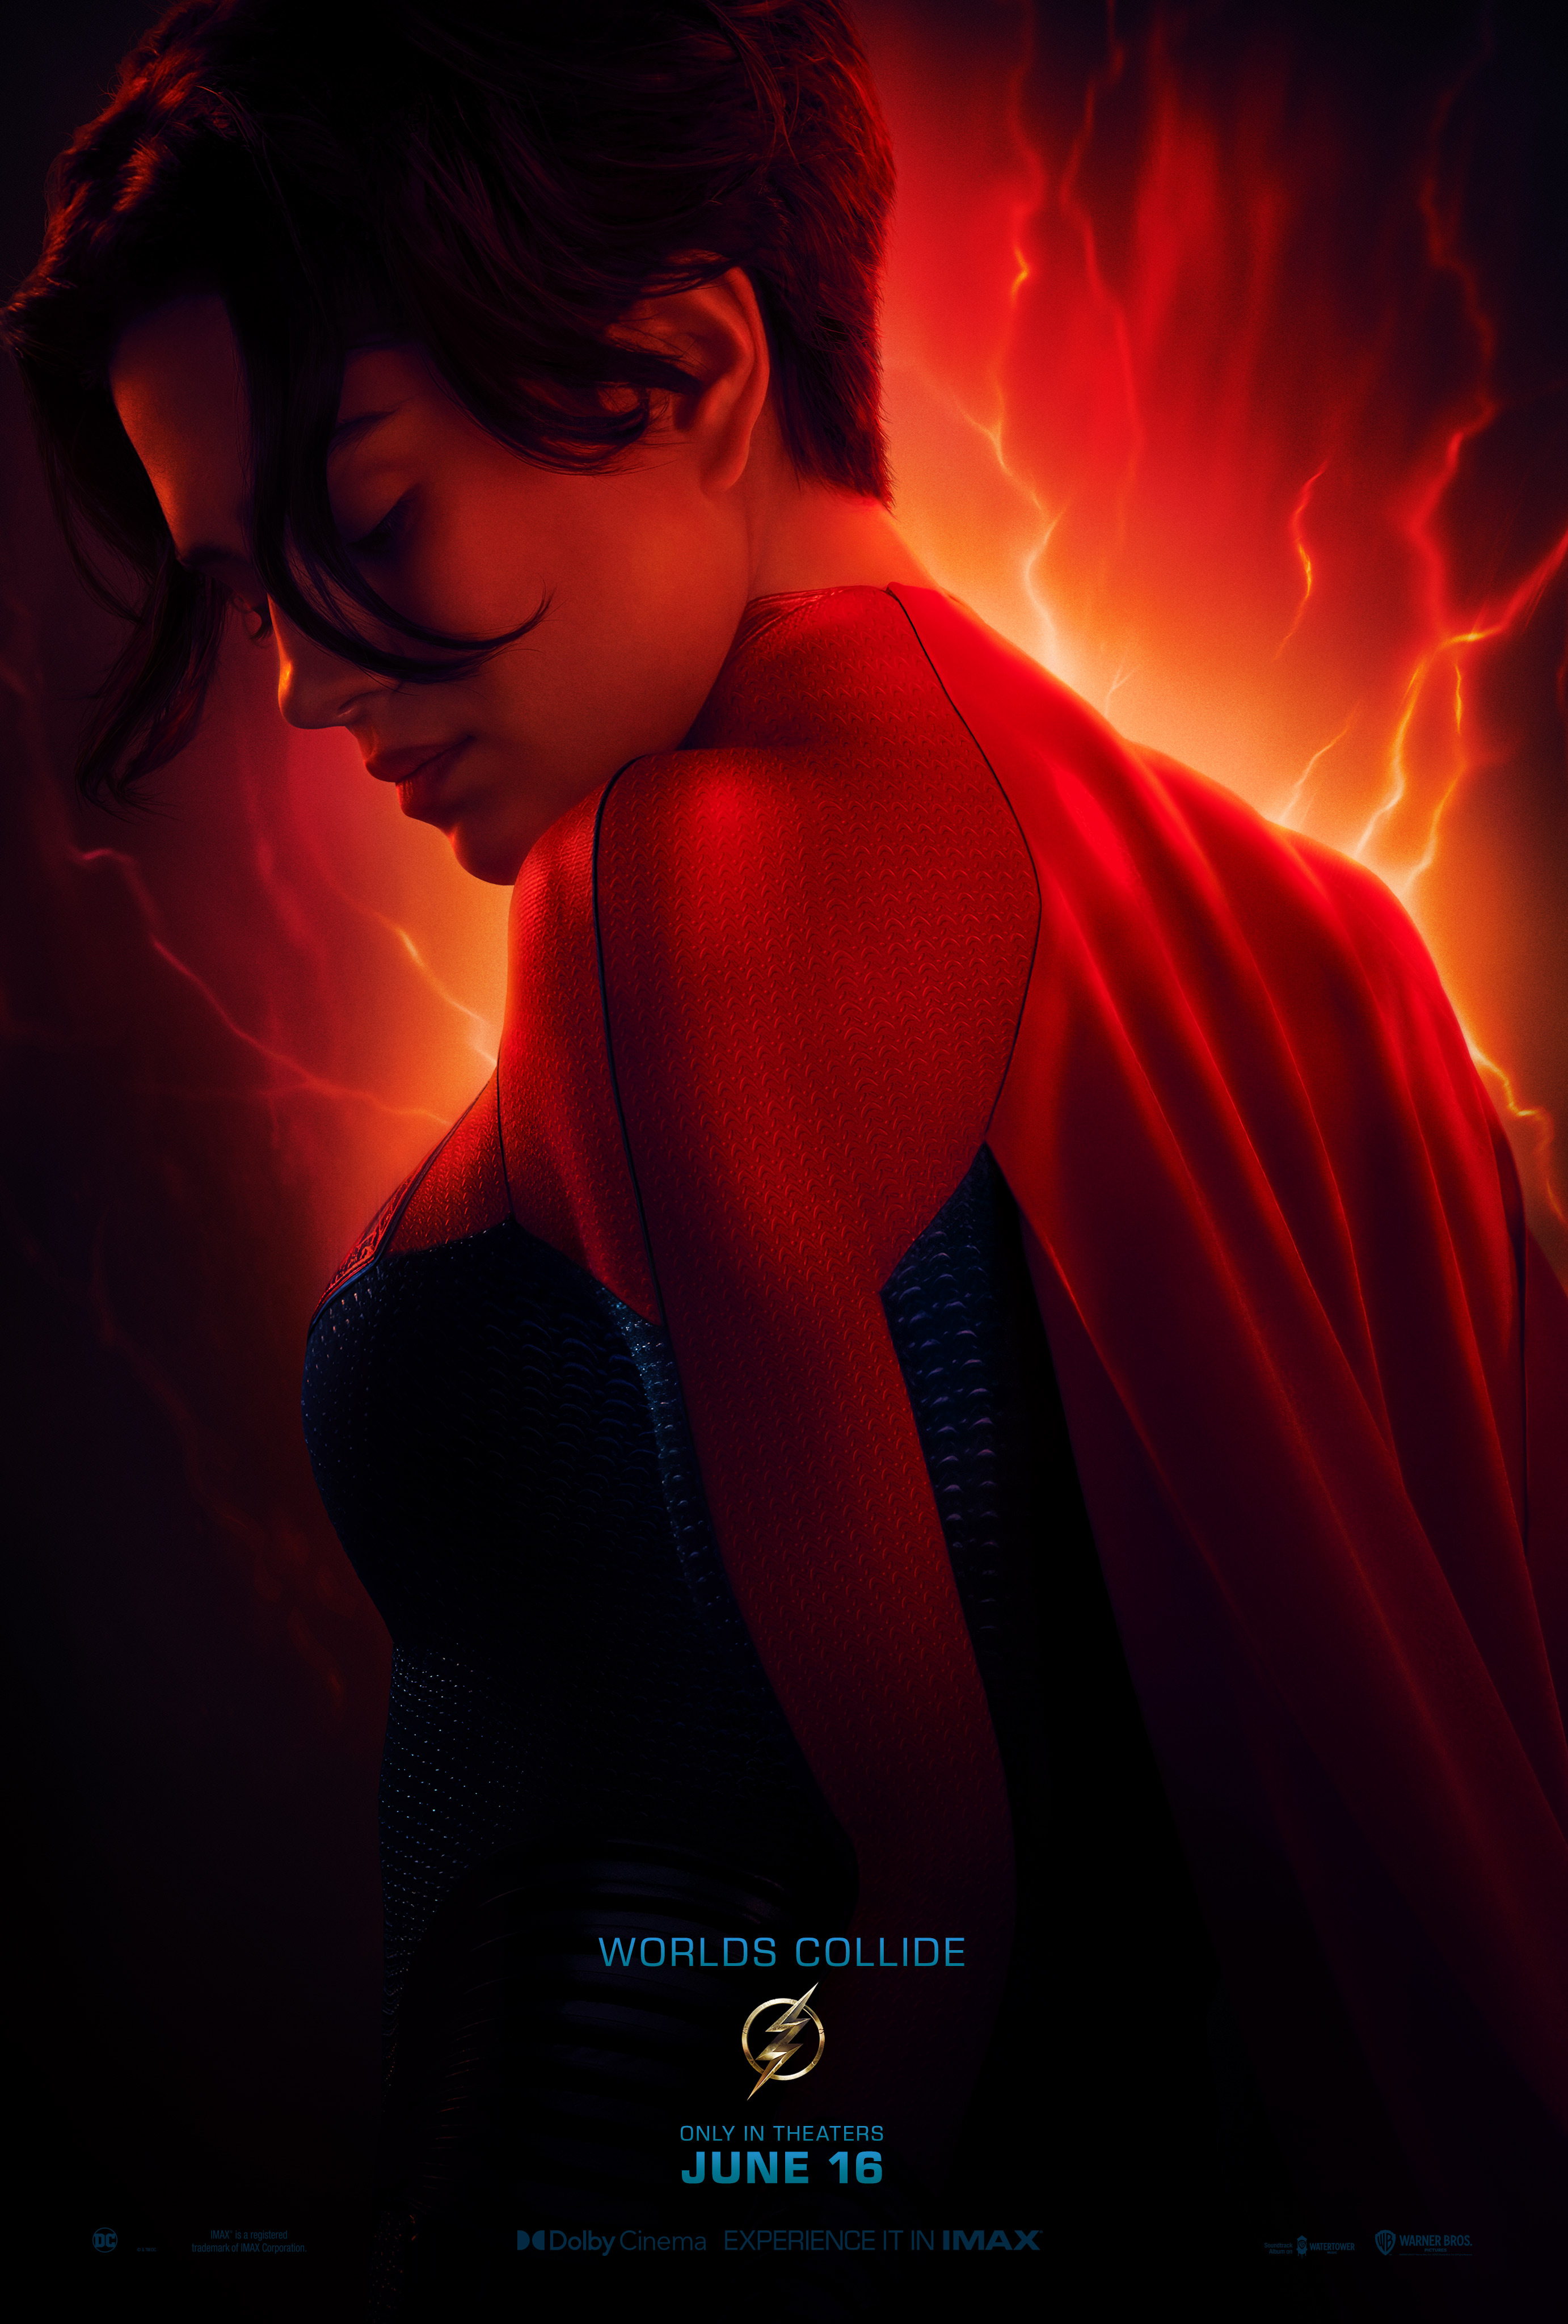 Sasha Calle as Kara Zor-El aka Supergirl | The Flash | Character poster